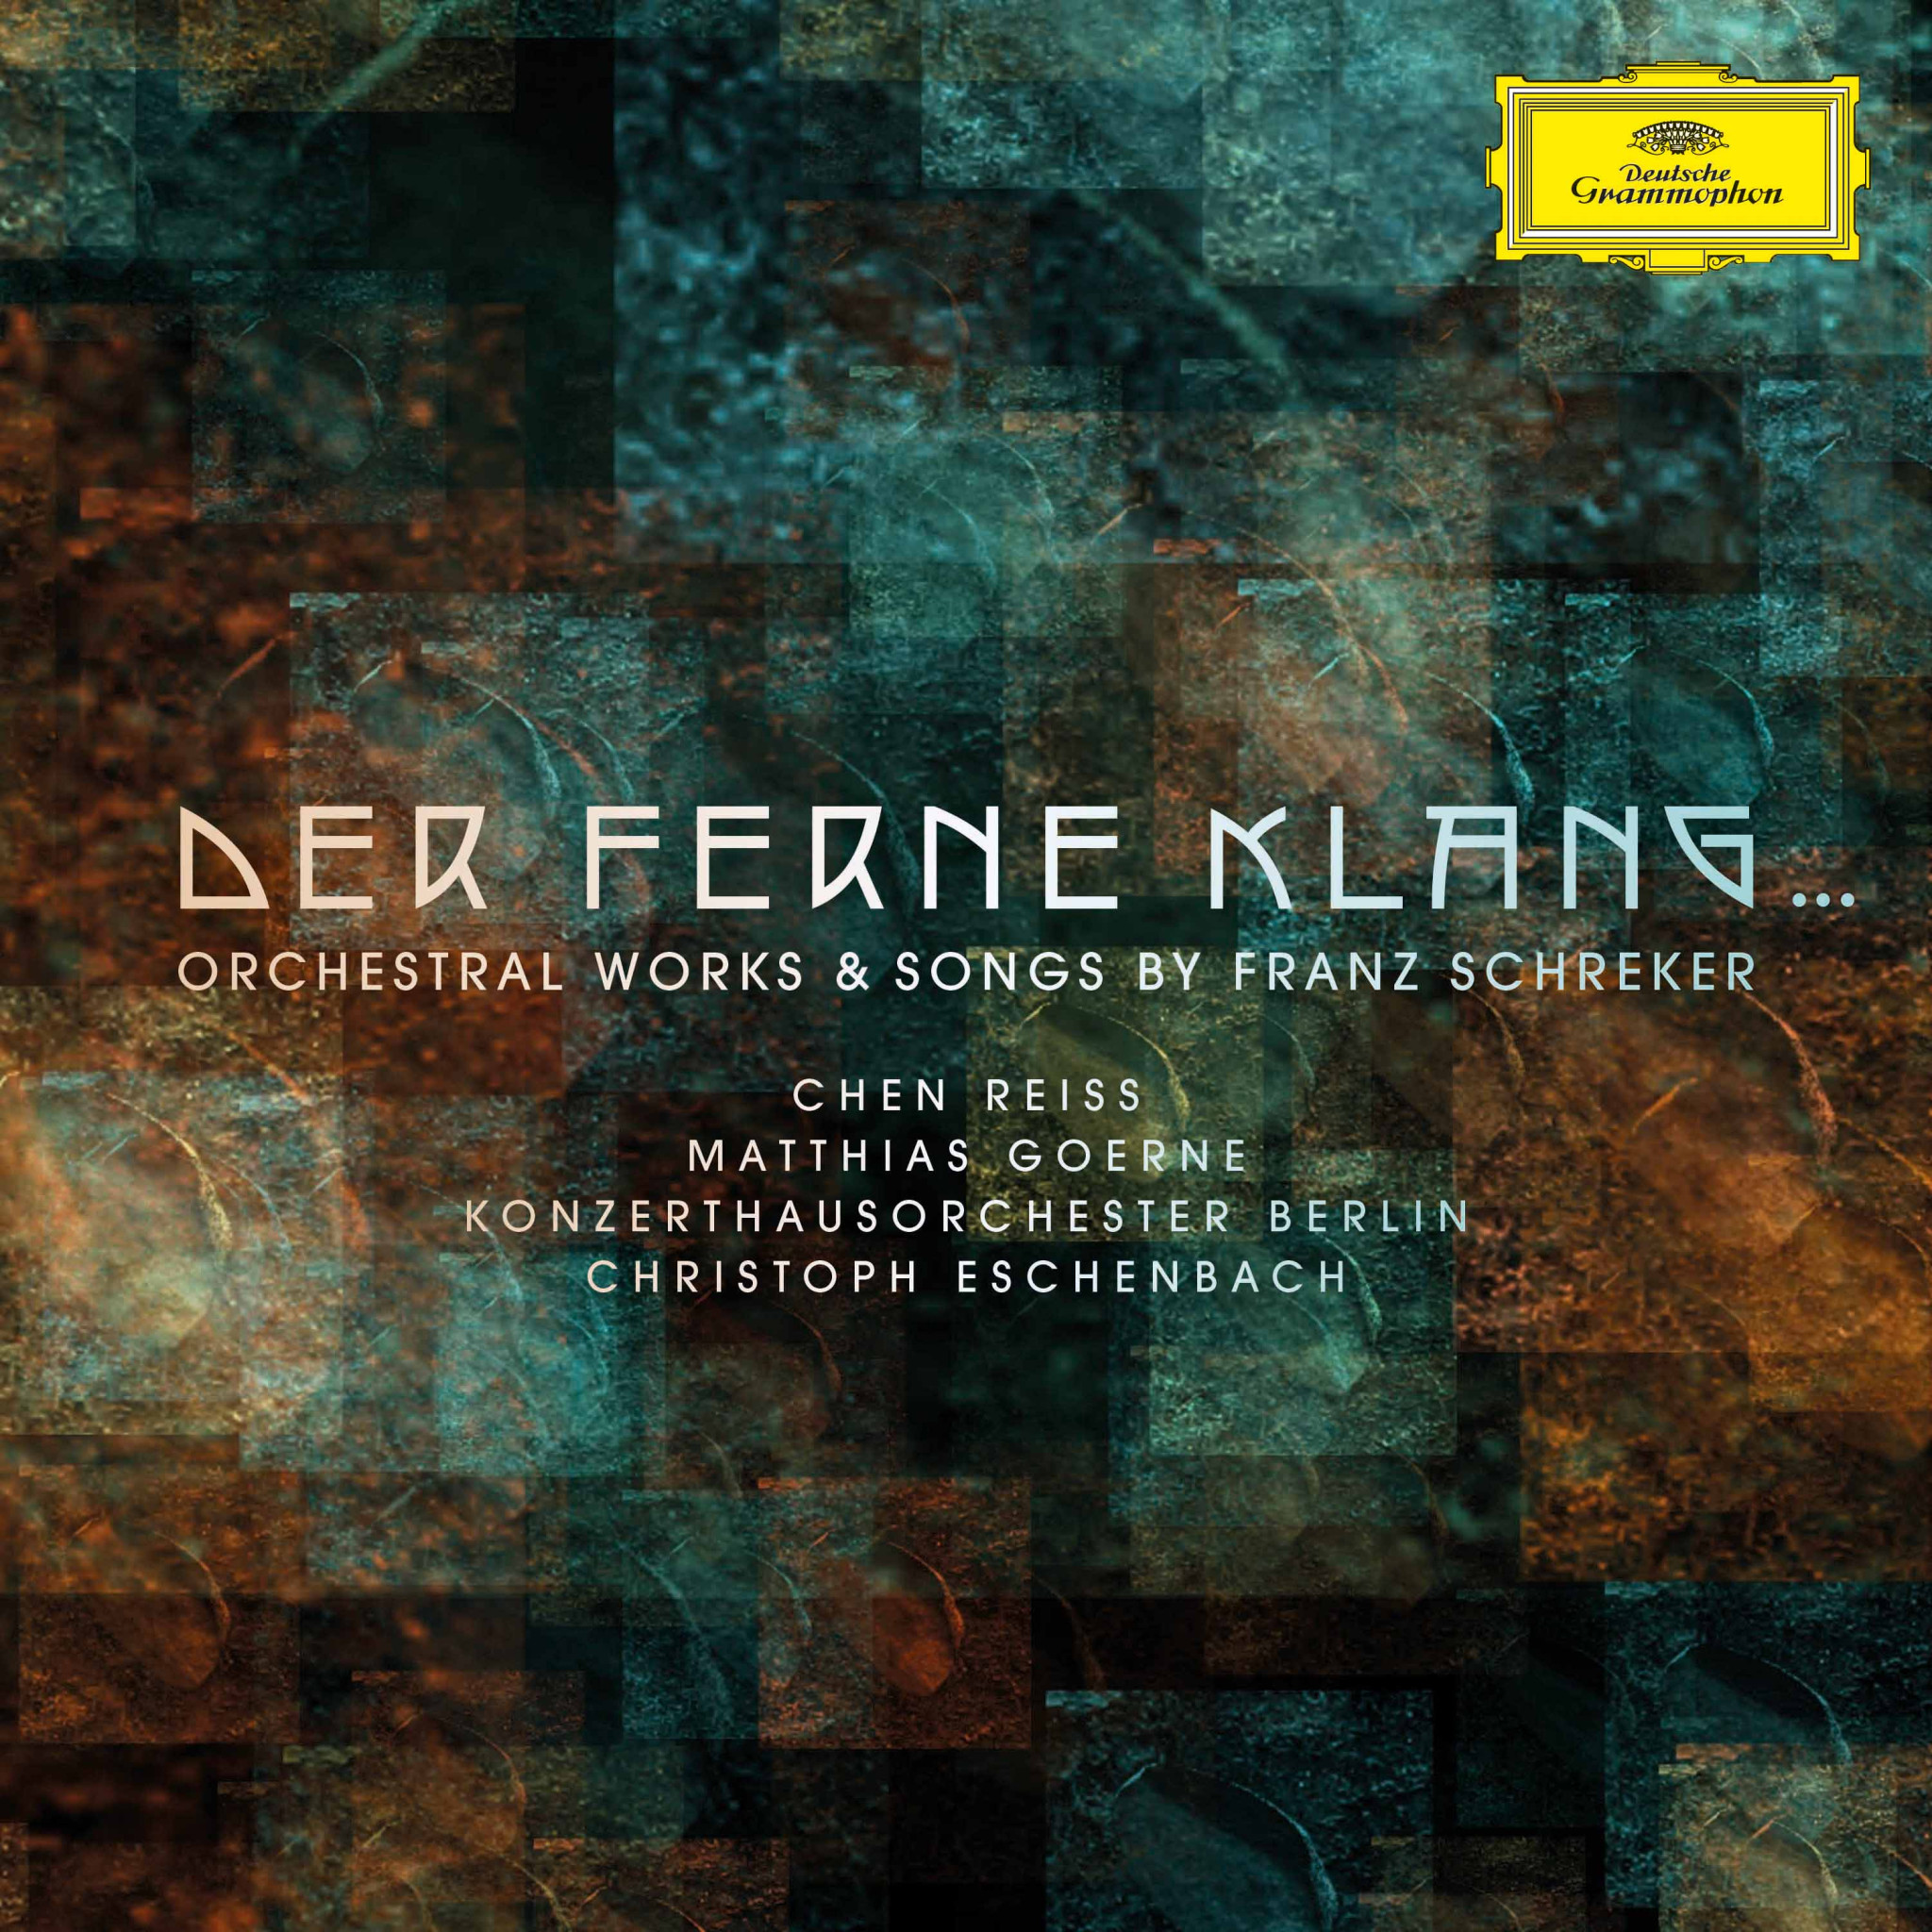 Christoph Eschenbach - Der ferne Klang... Orchestral Works & Songs by Franz Schreker